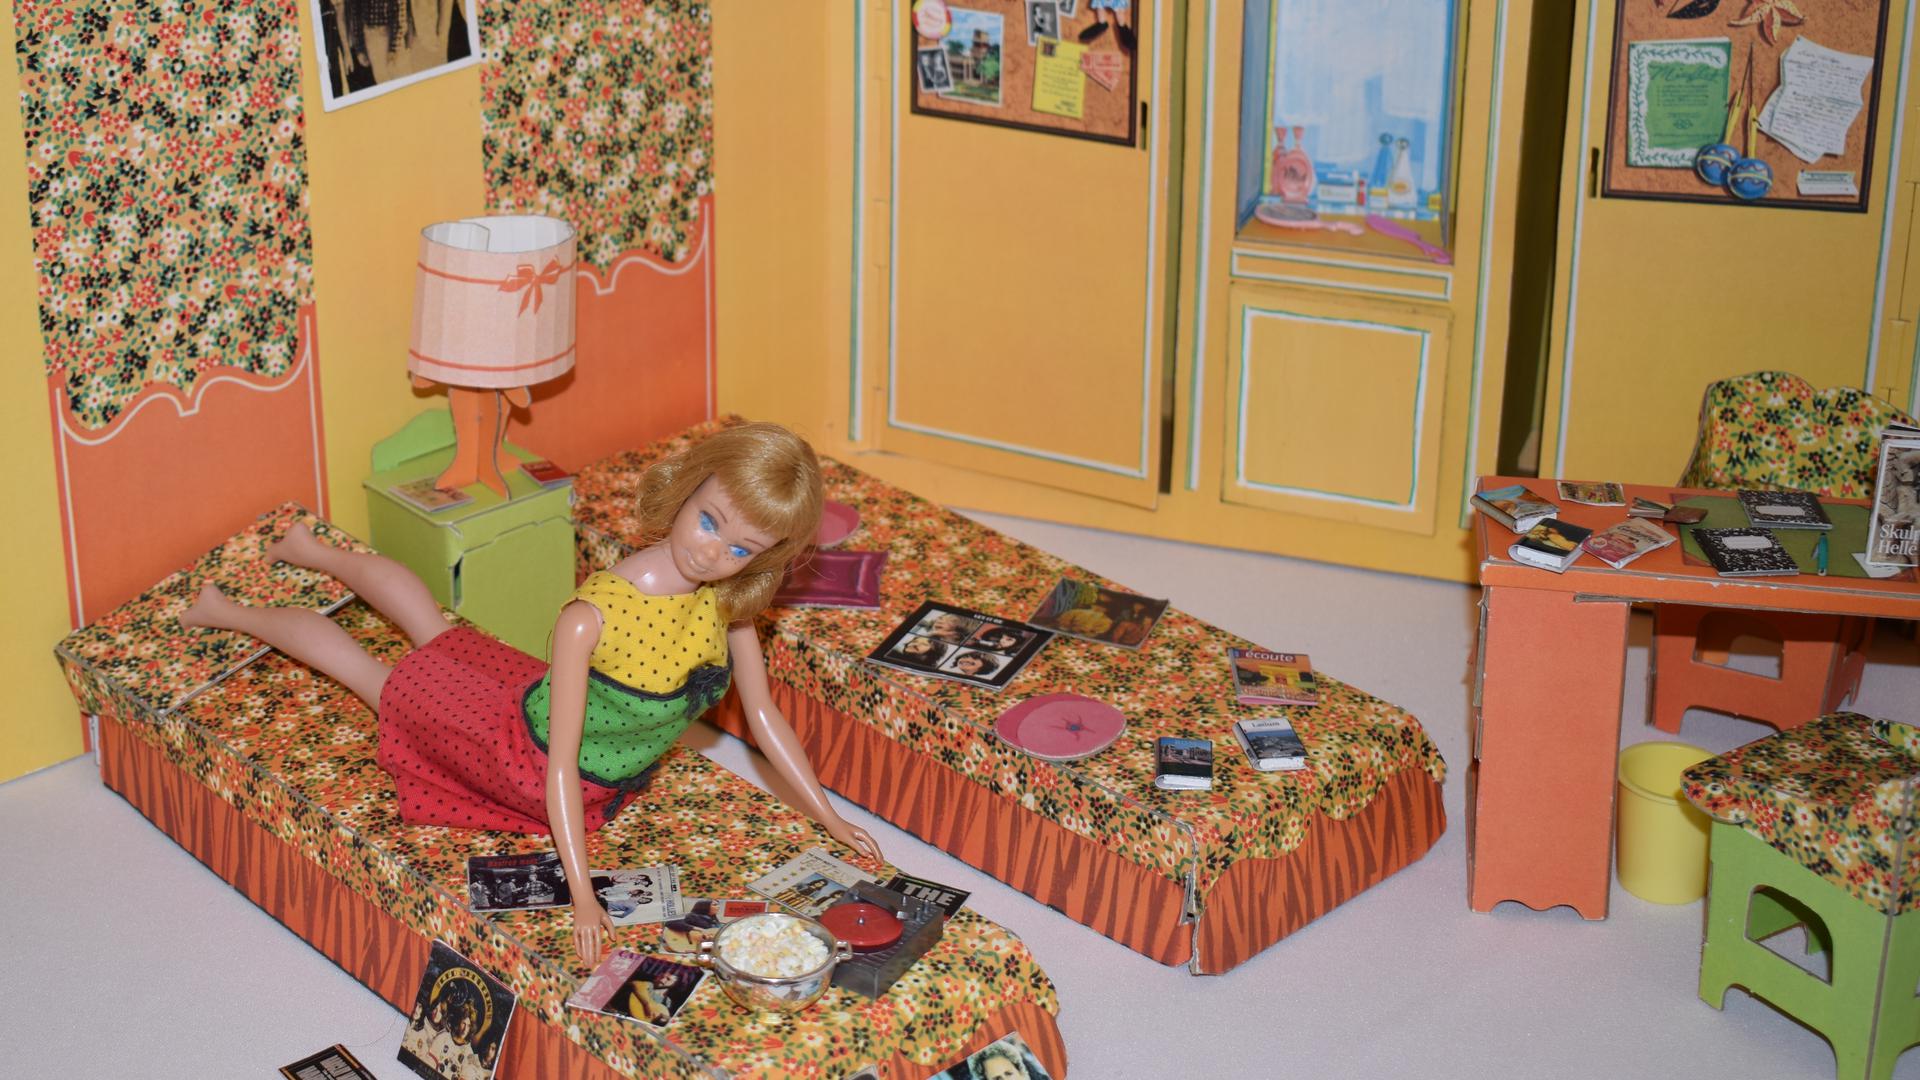  Das Bruchsaler Schloss zeigt in einer Ausstellung zahlreiche Barbie-Puppen und legt dabei einen großen Wert auf die Entwicklung – von den Anfangsjahren bis heute.